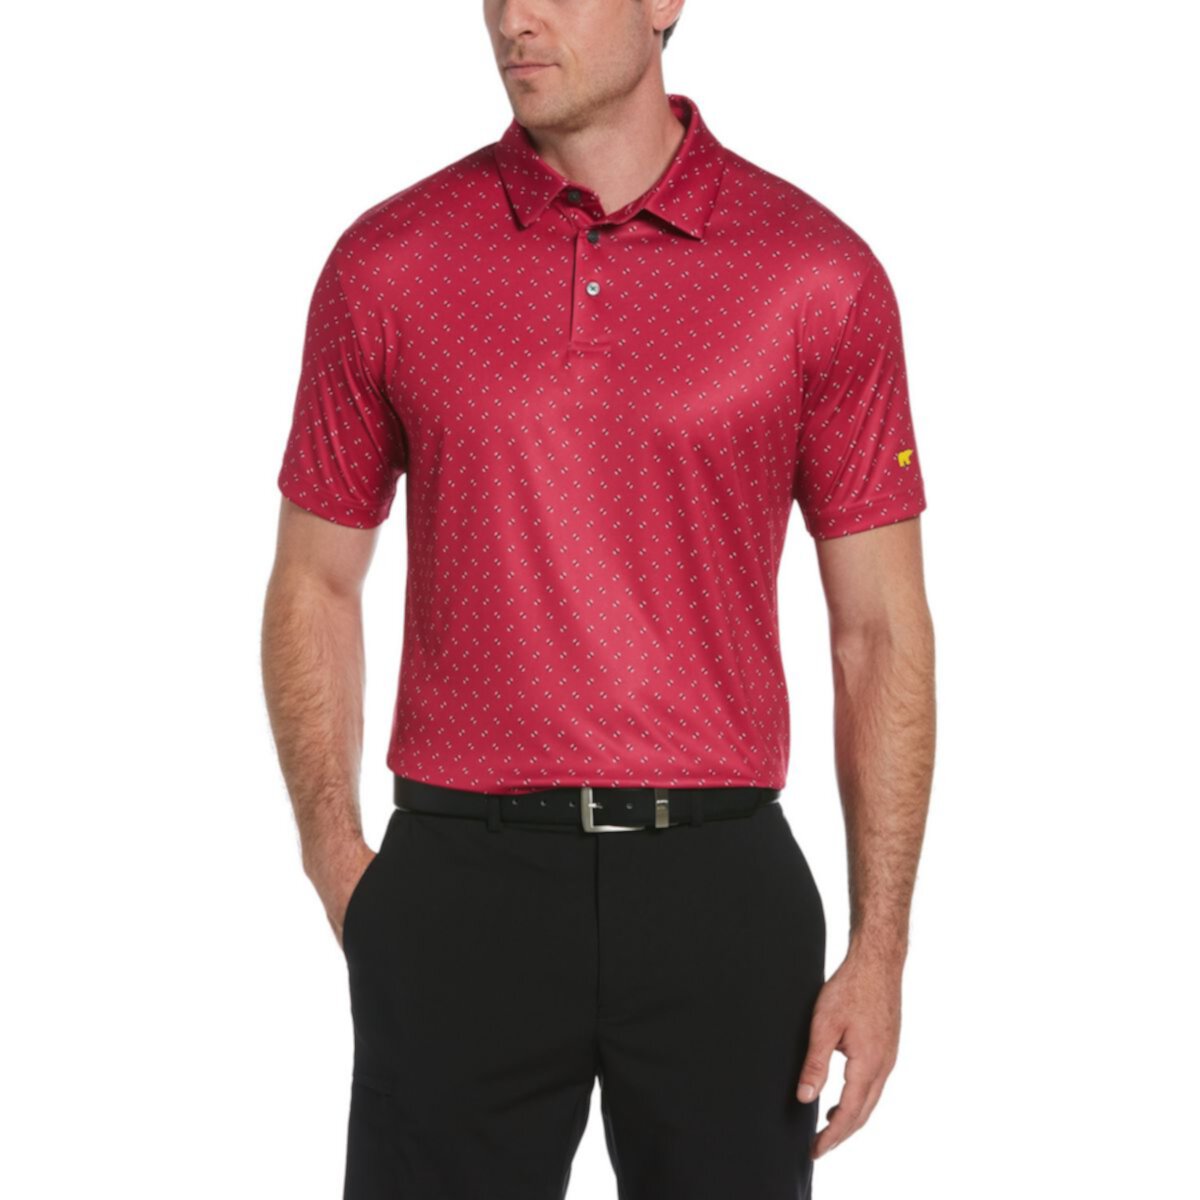 Мужская футболка-поло для гольфа с геометрическим рисунком Jack Nicklaus StayDri Classic Fit Jack Nicklaus